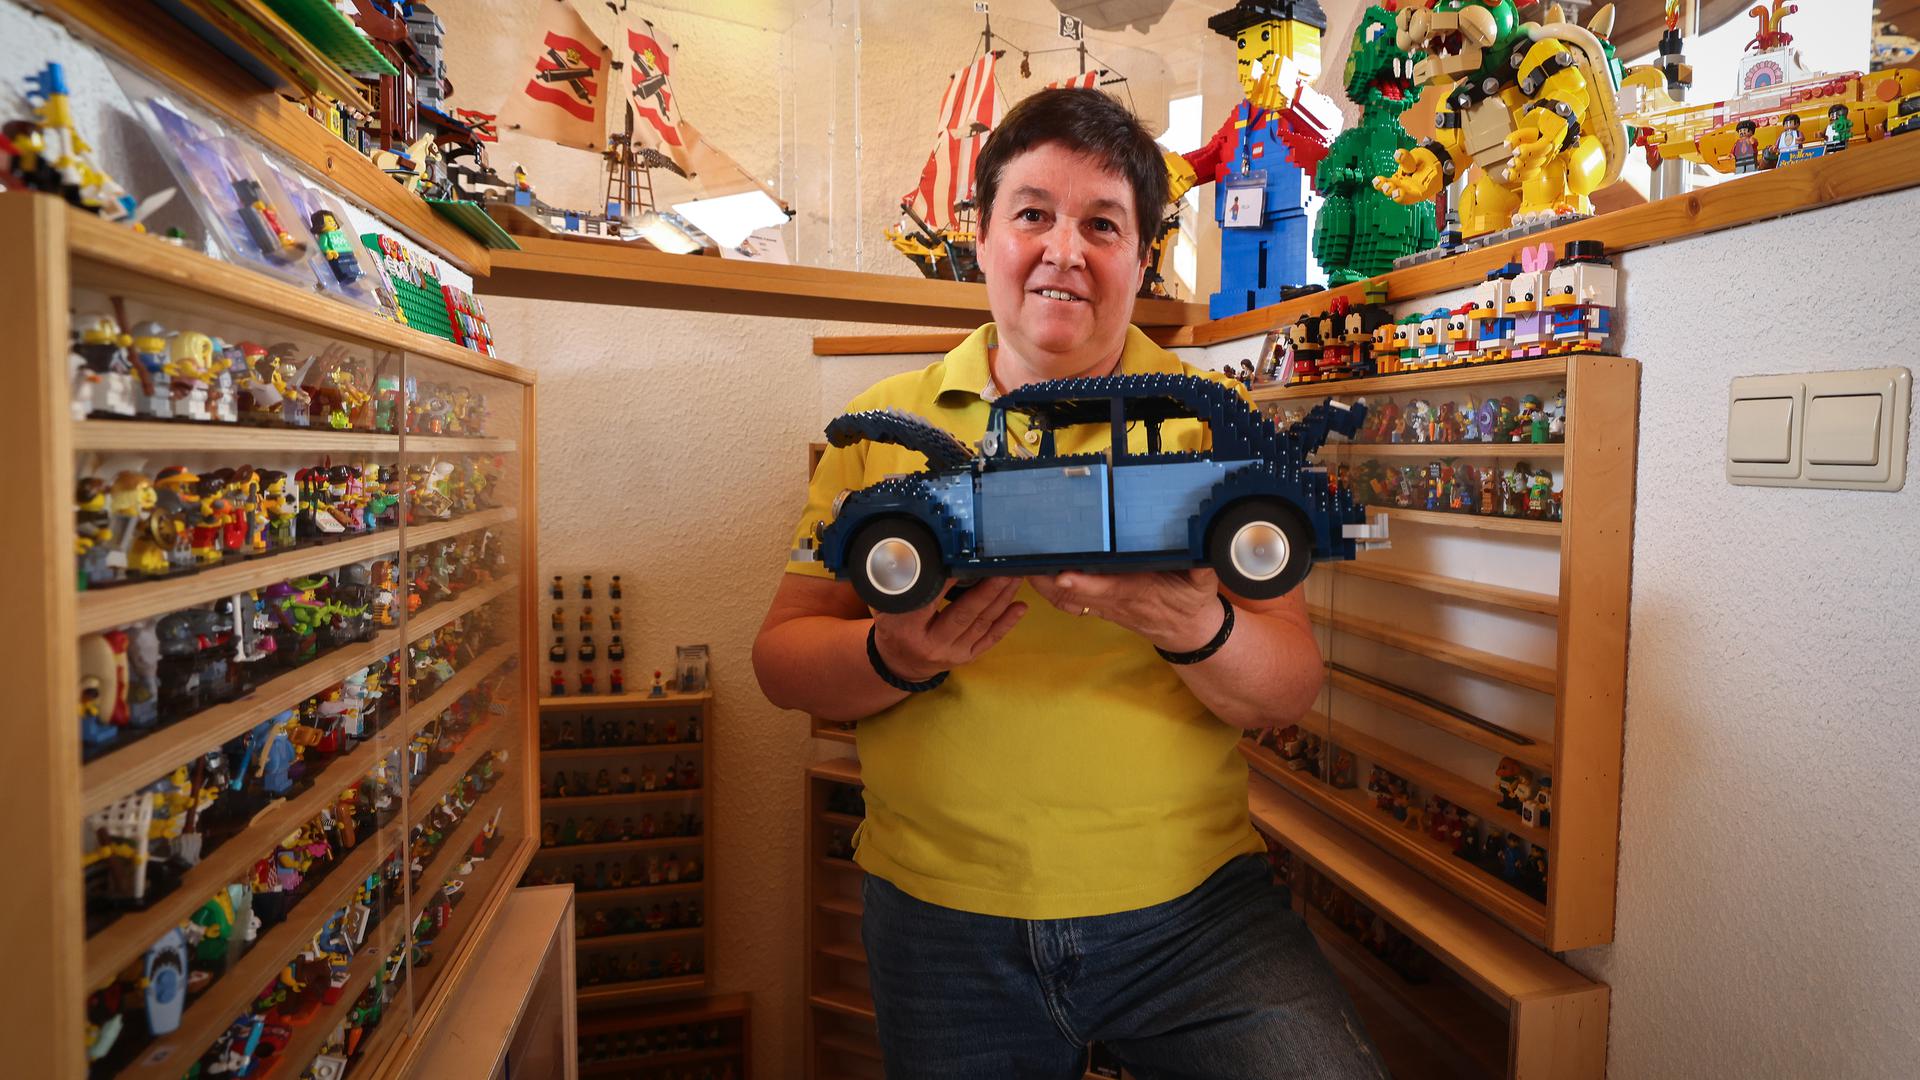 Lifestyle.Besuch bei der Legosammlerin Chantal Welfringer im Rahmen der Ausstellung "Brixembourg" .Foto: Gerry Huberty/Luxemburger Wort